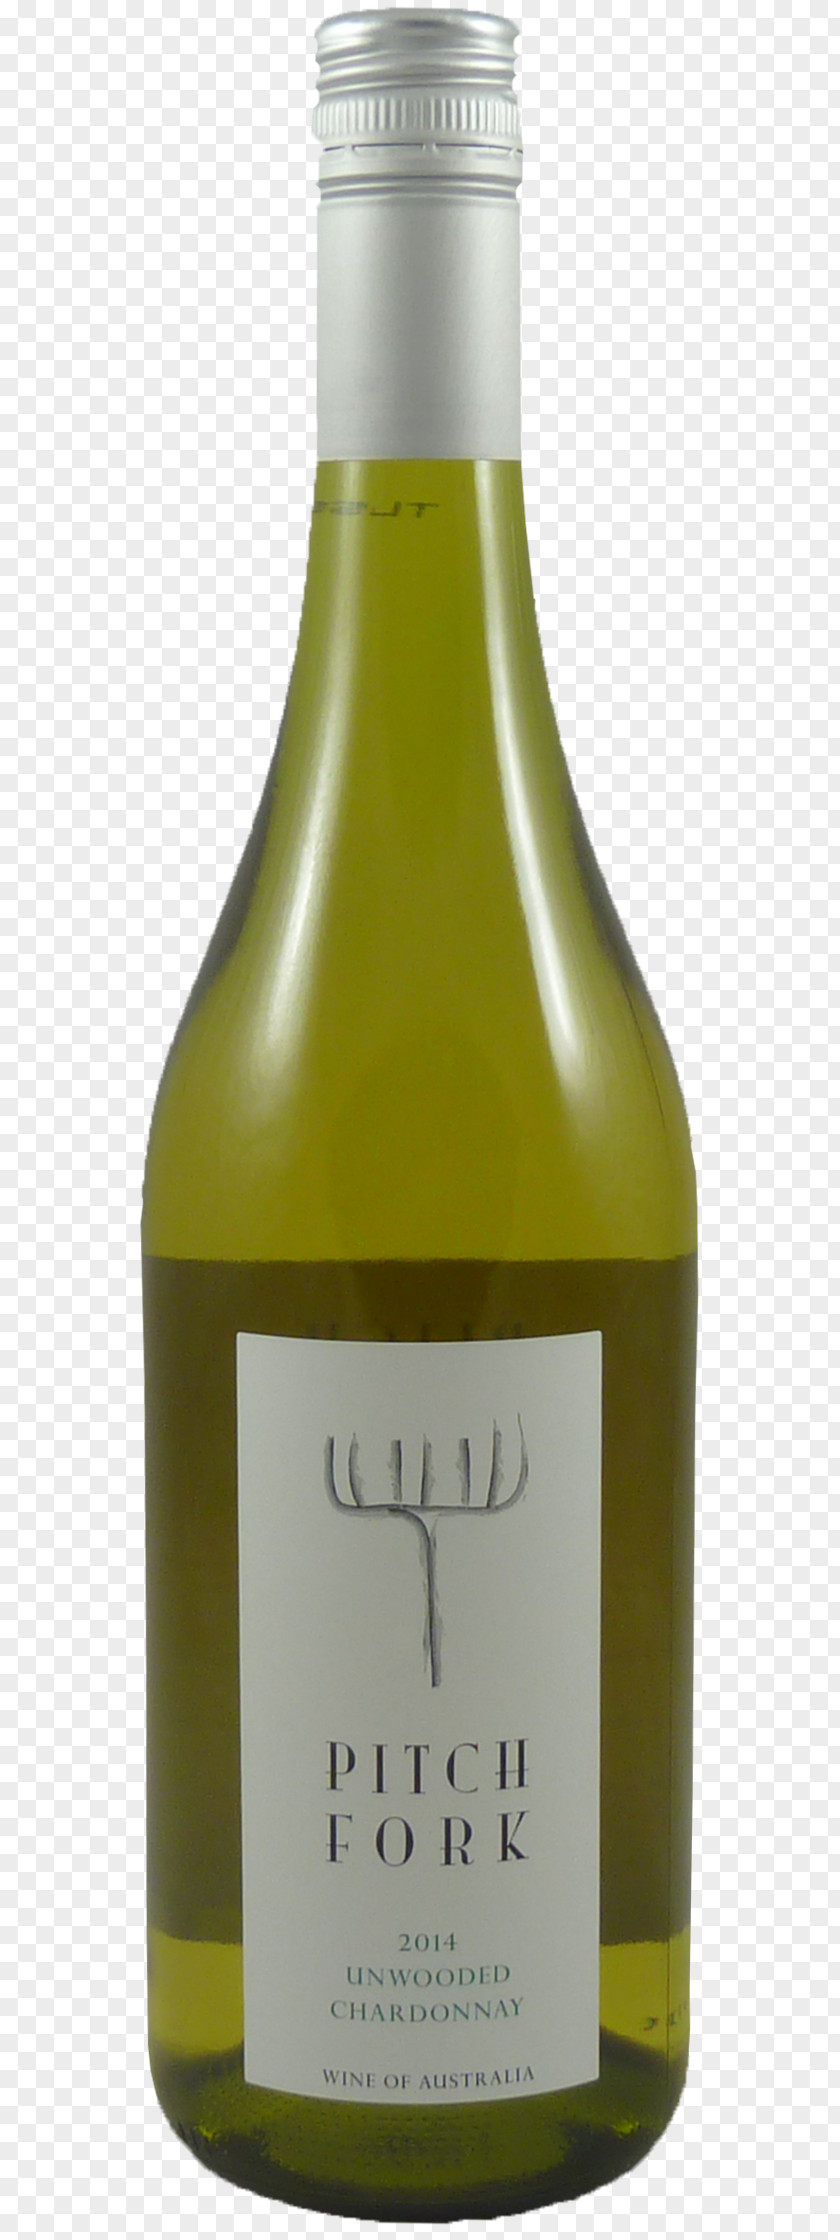 Wine Liqueur White Glass Bottle PNG